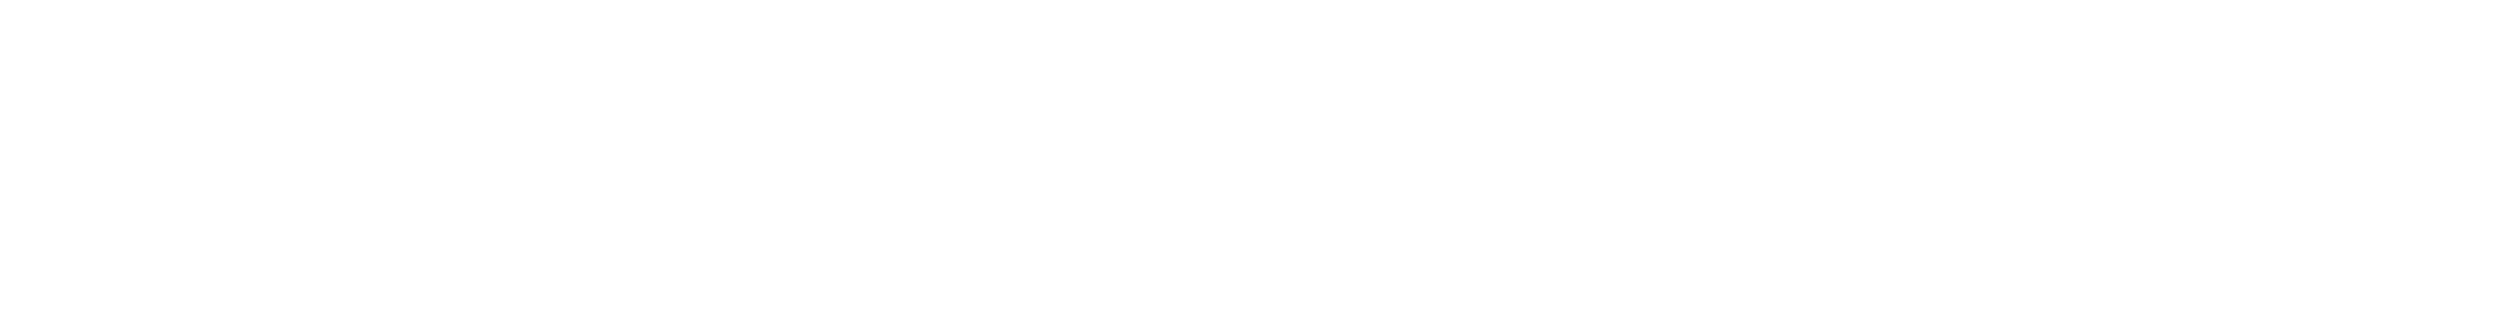 How to Pronounce RōM